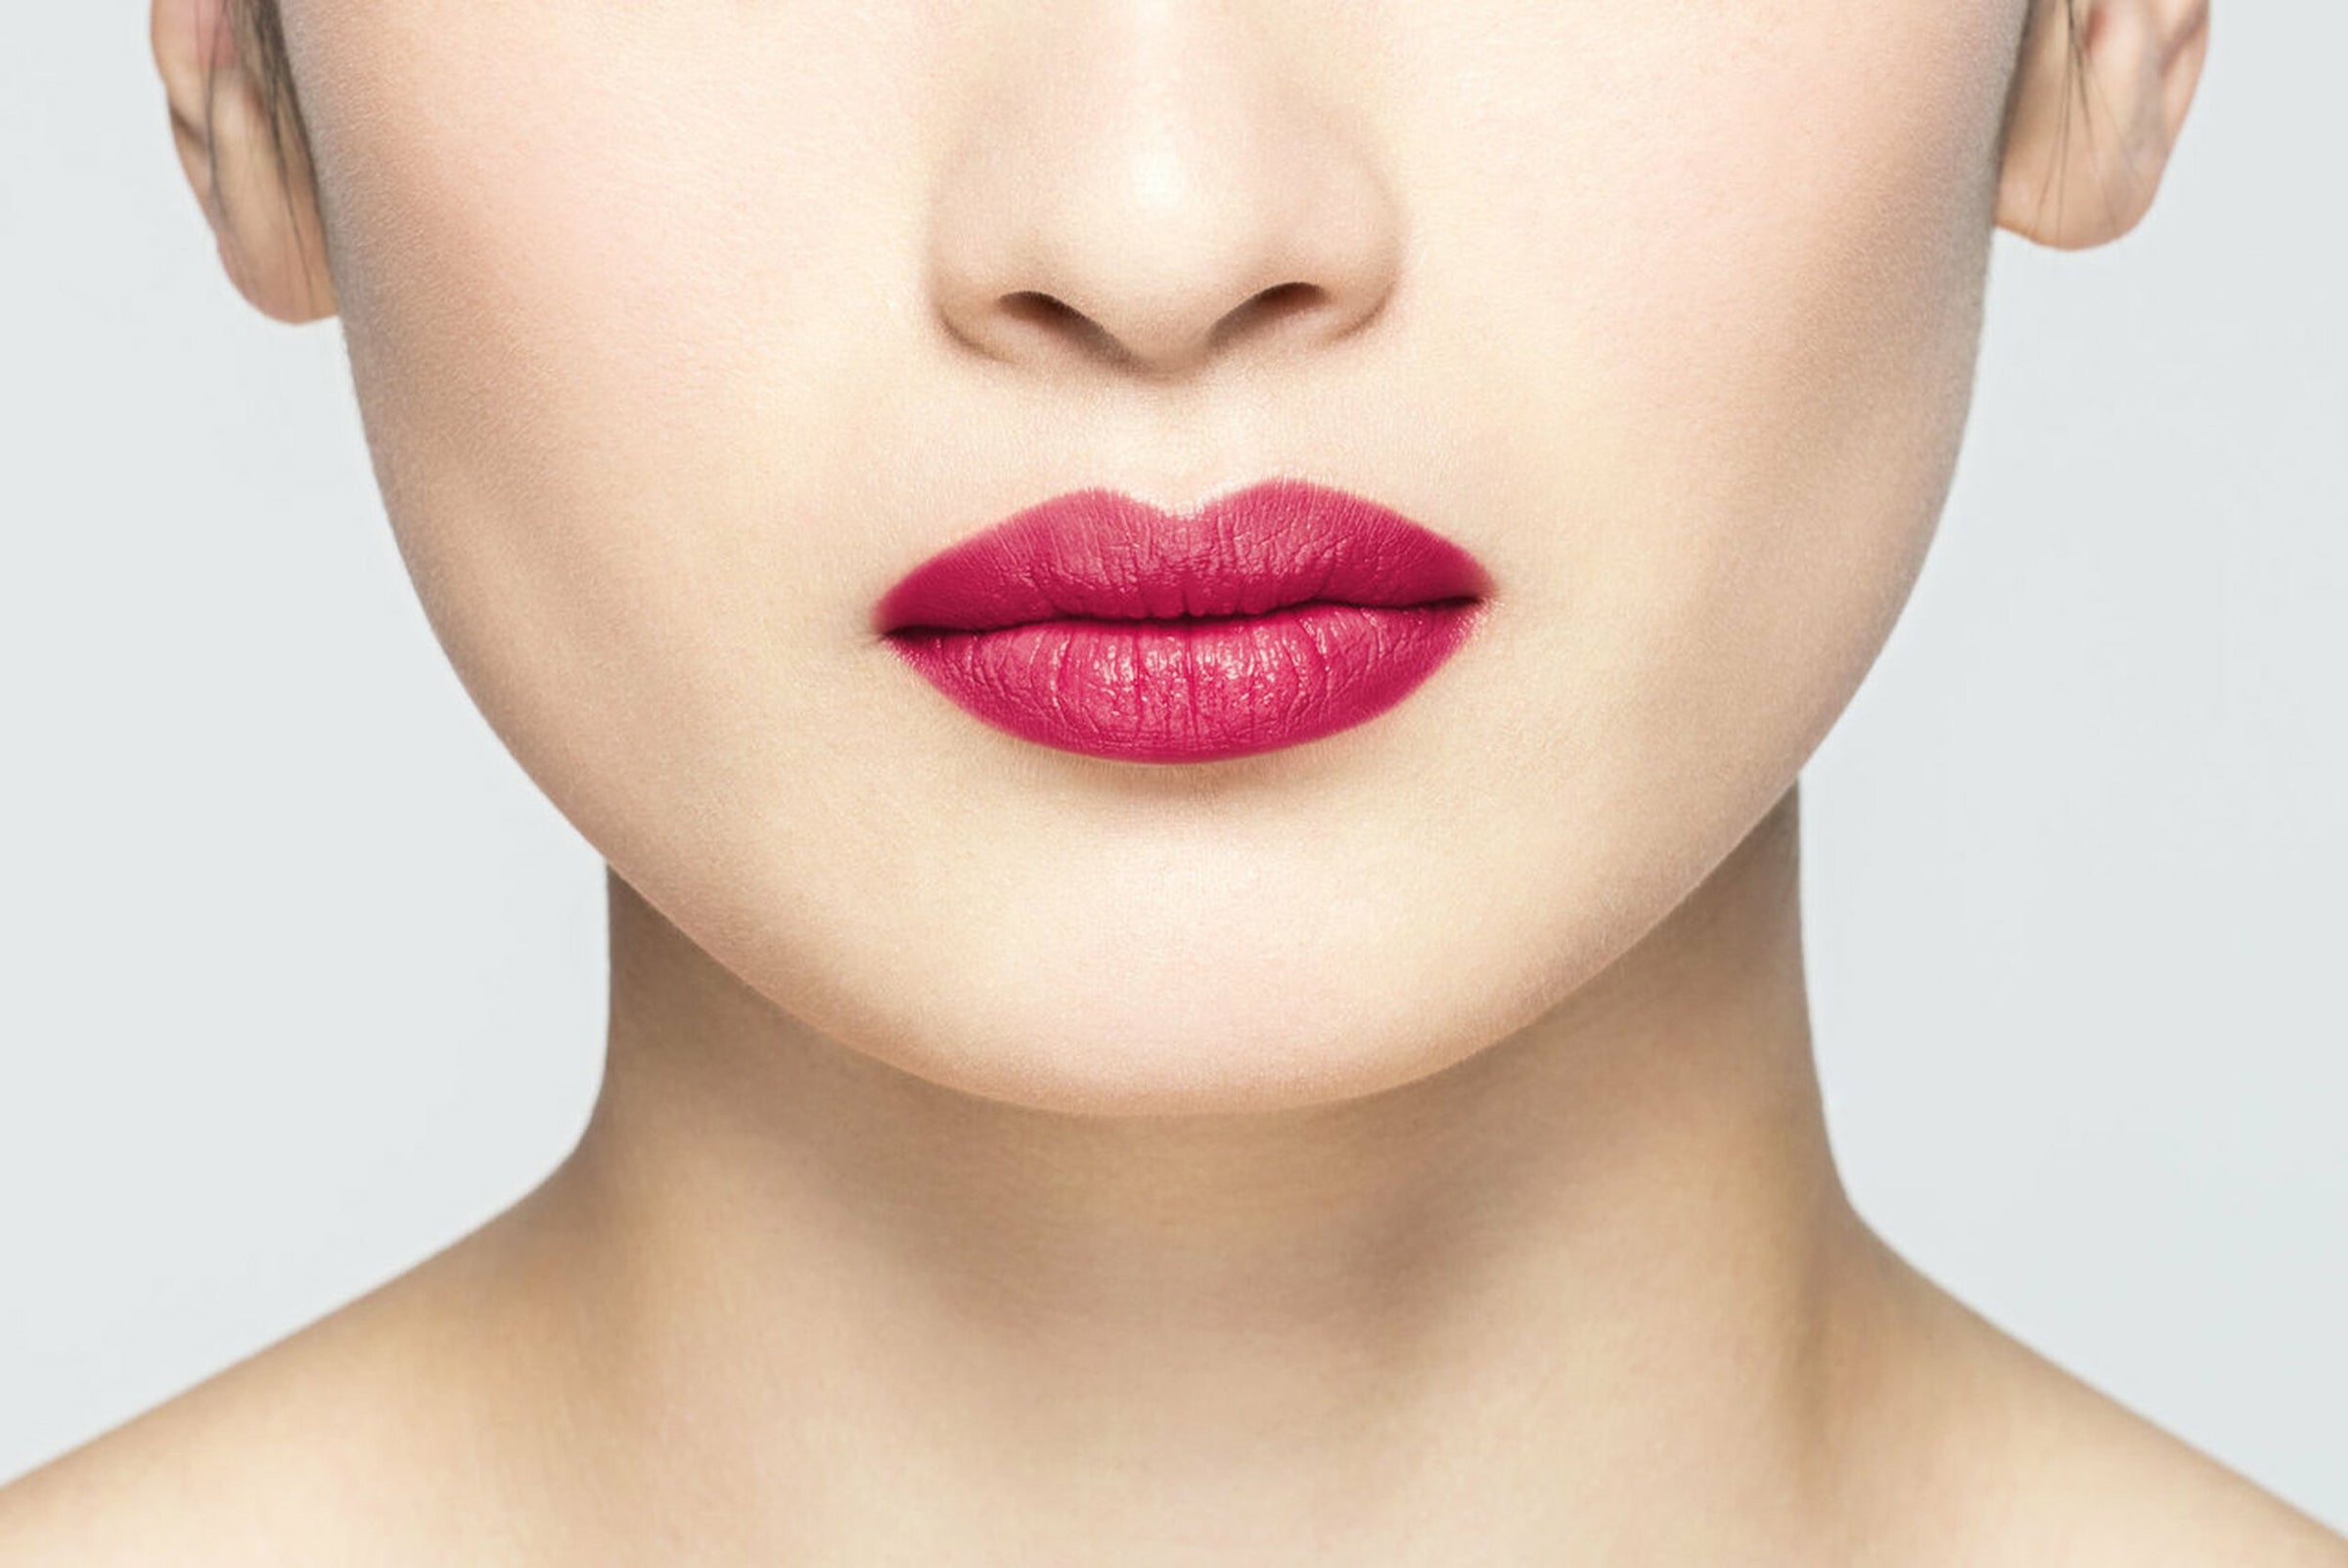 La Bouche Rouge Pink Fine Leather Refillable Lipstick Case